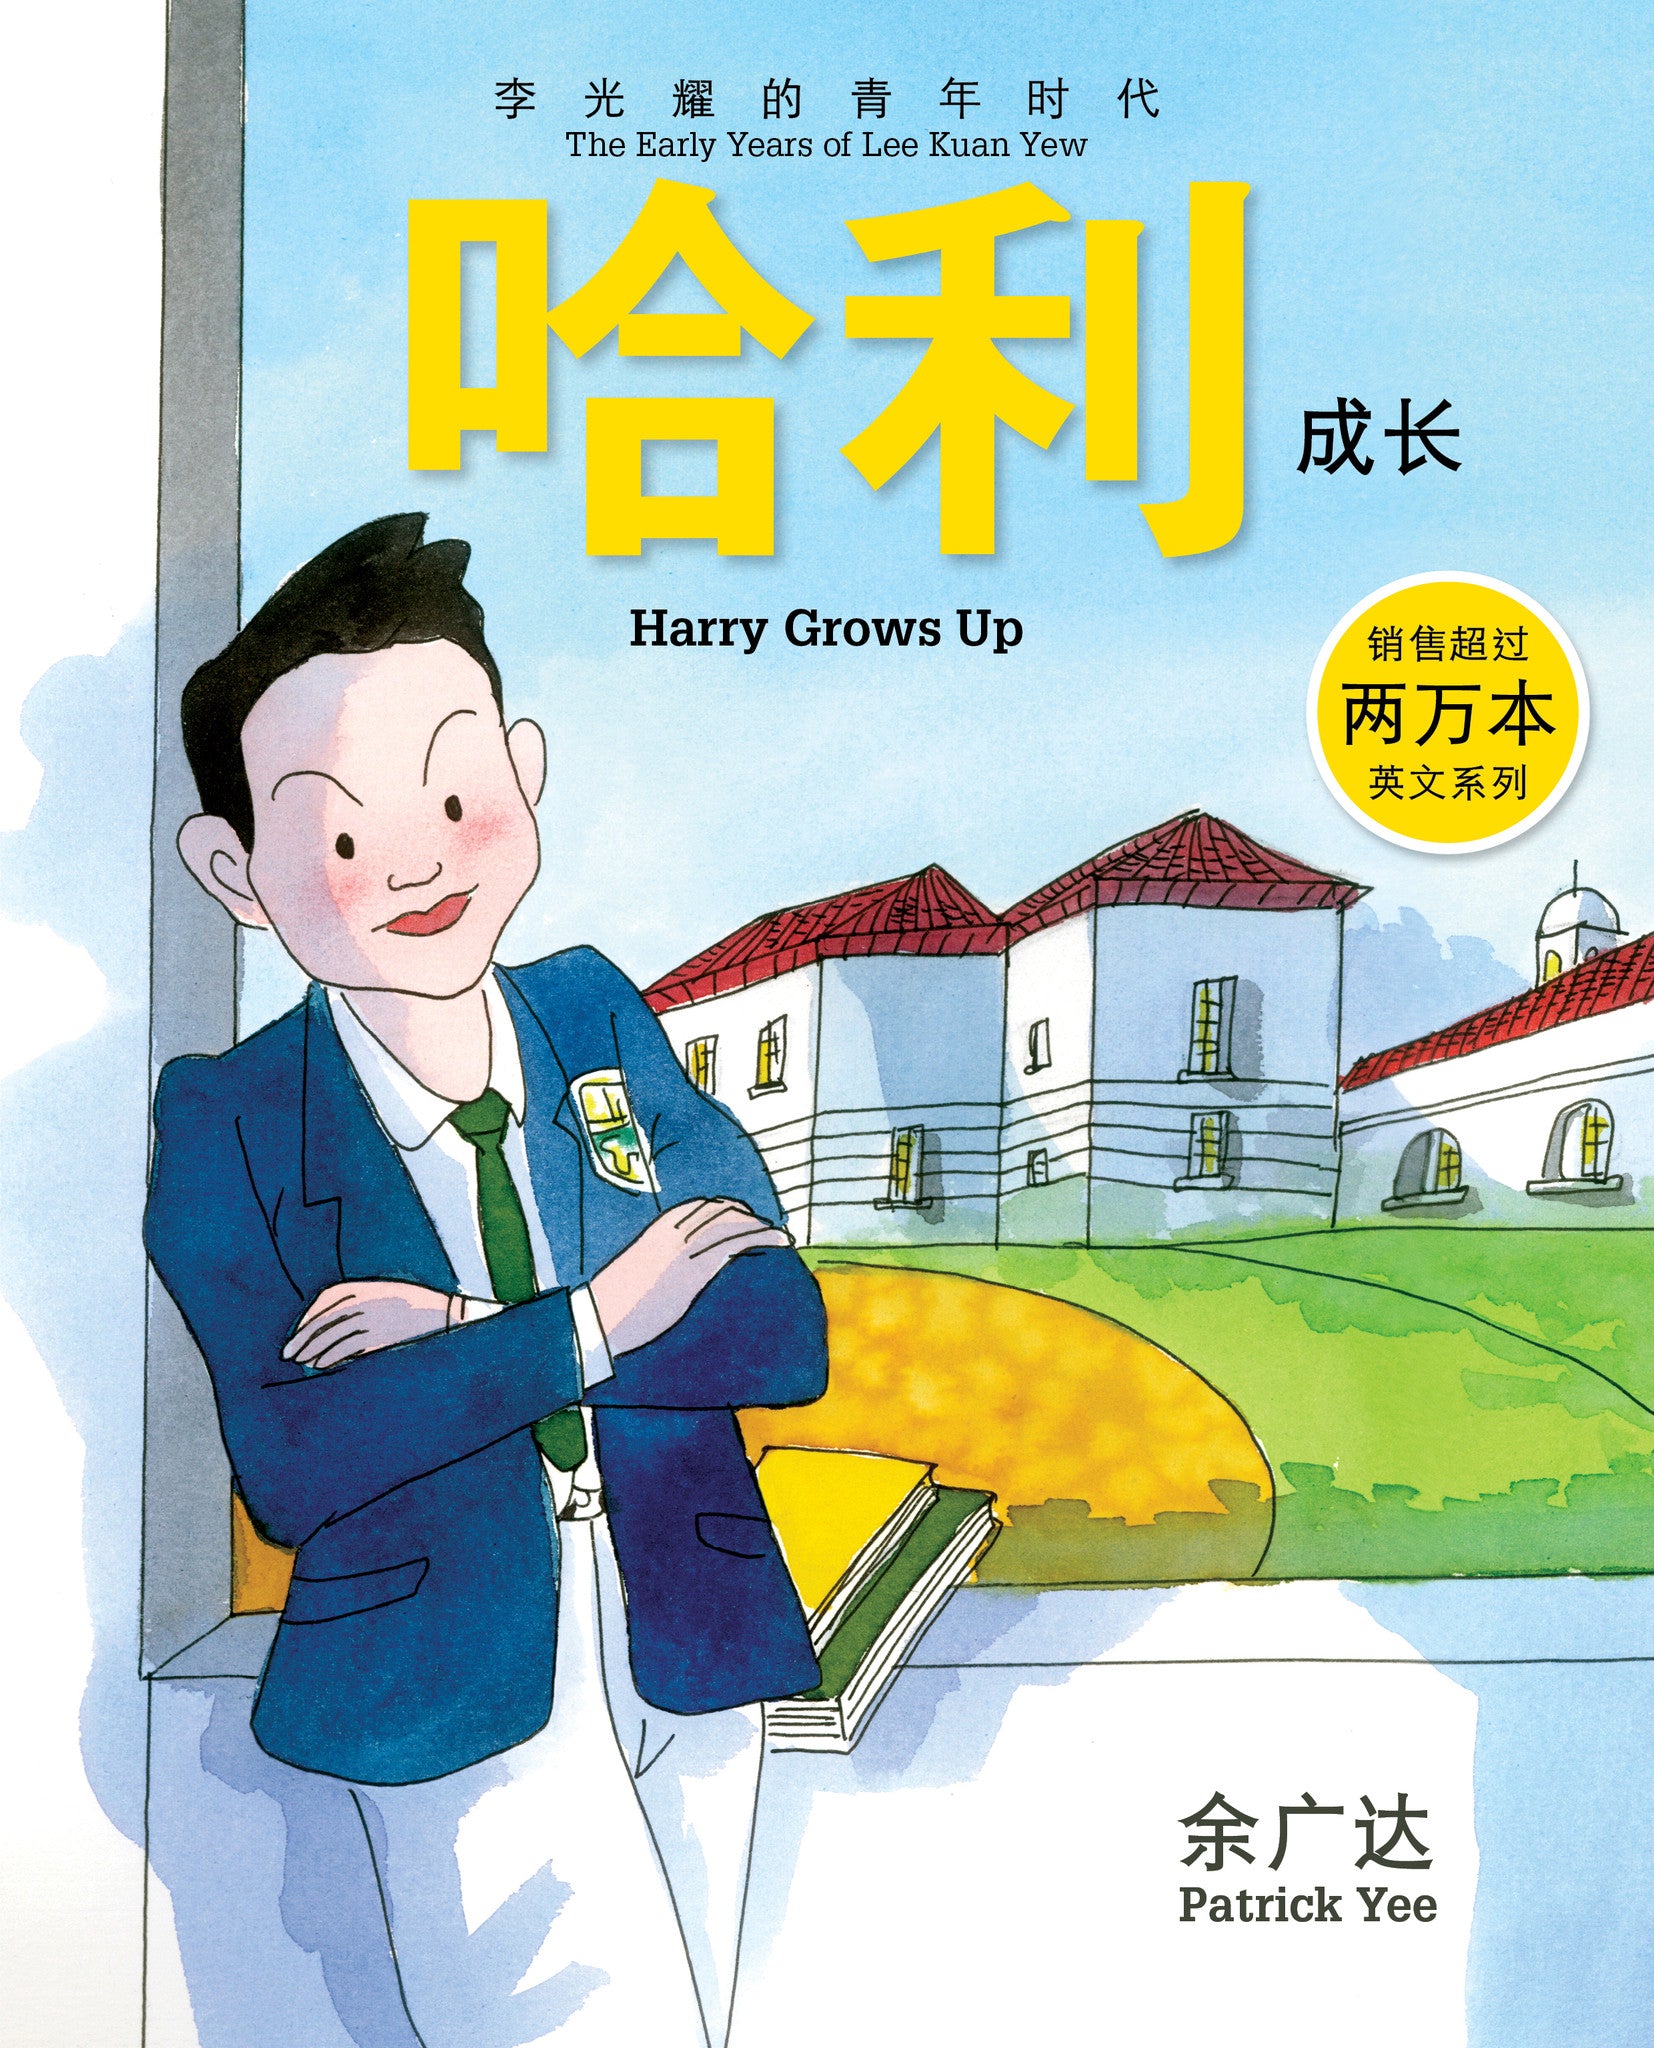 《哈利成长 : 李光耀的青年时代》第二册